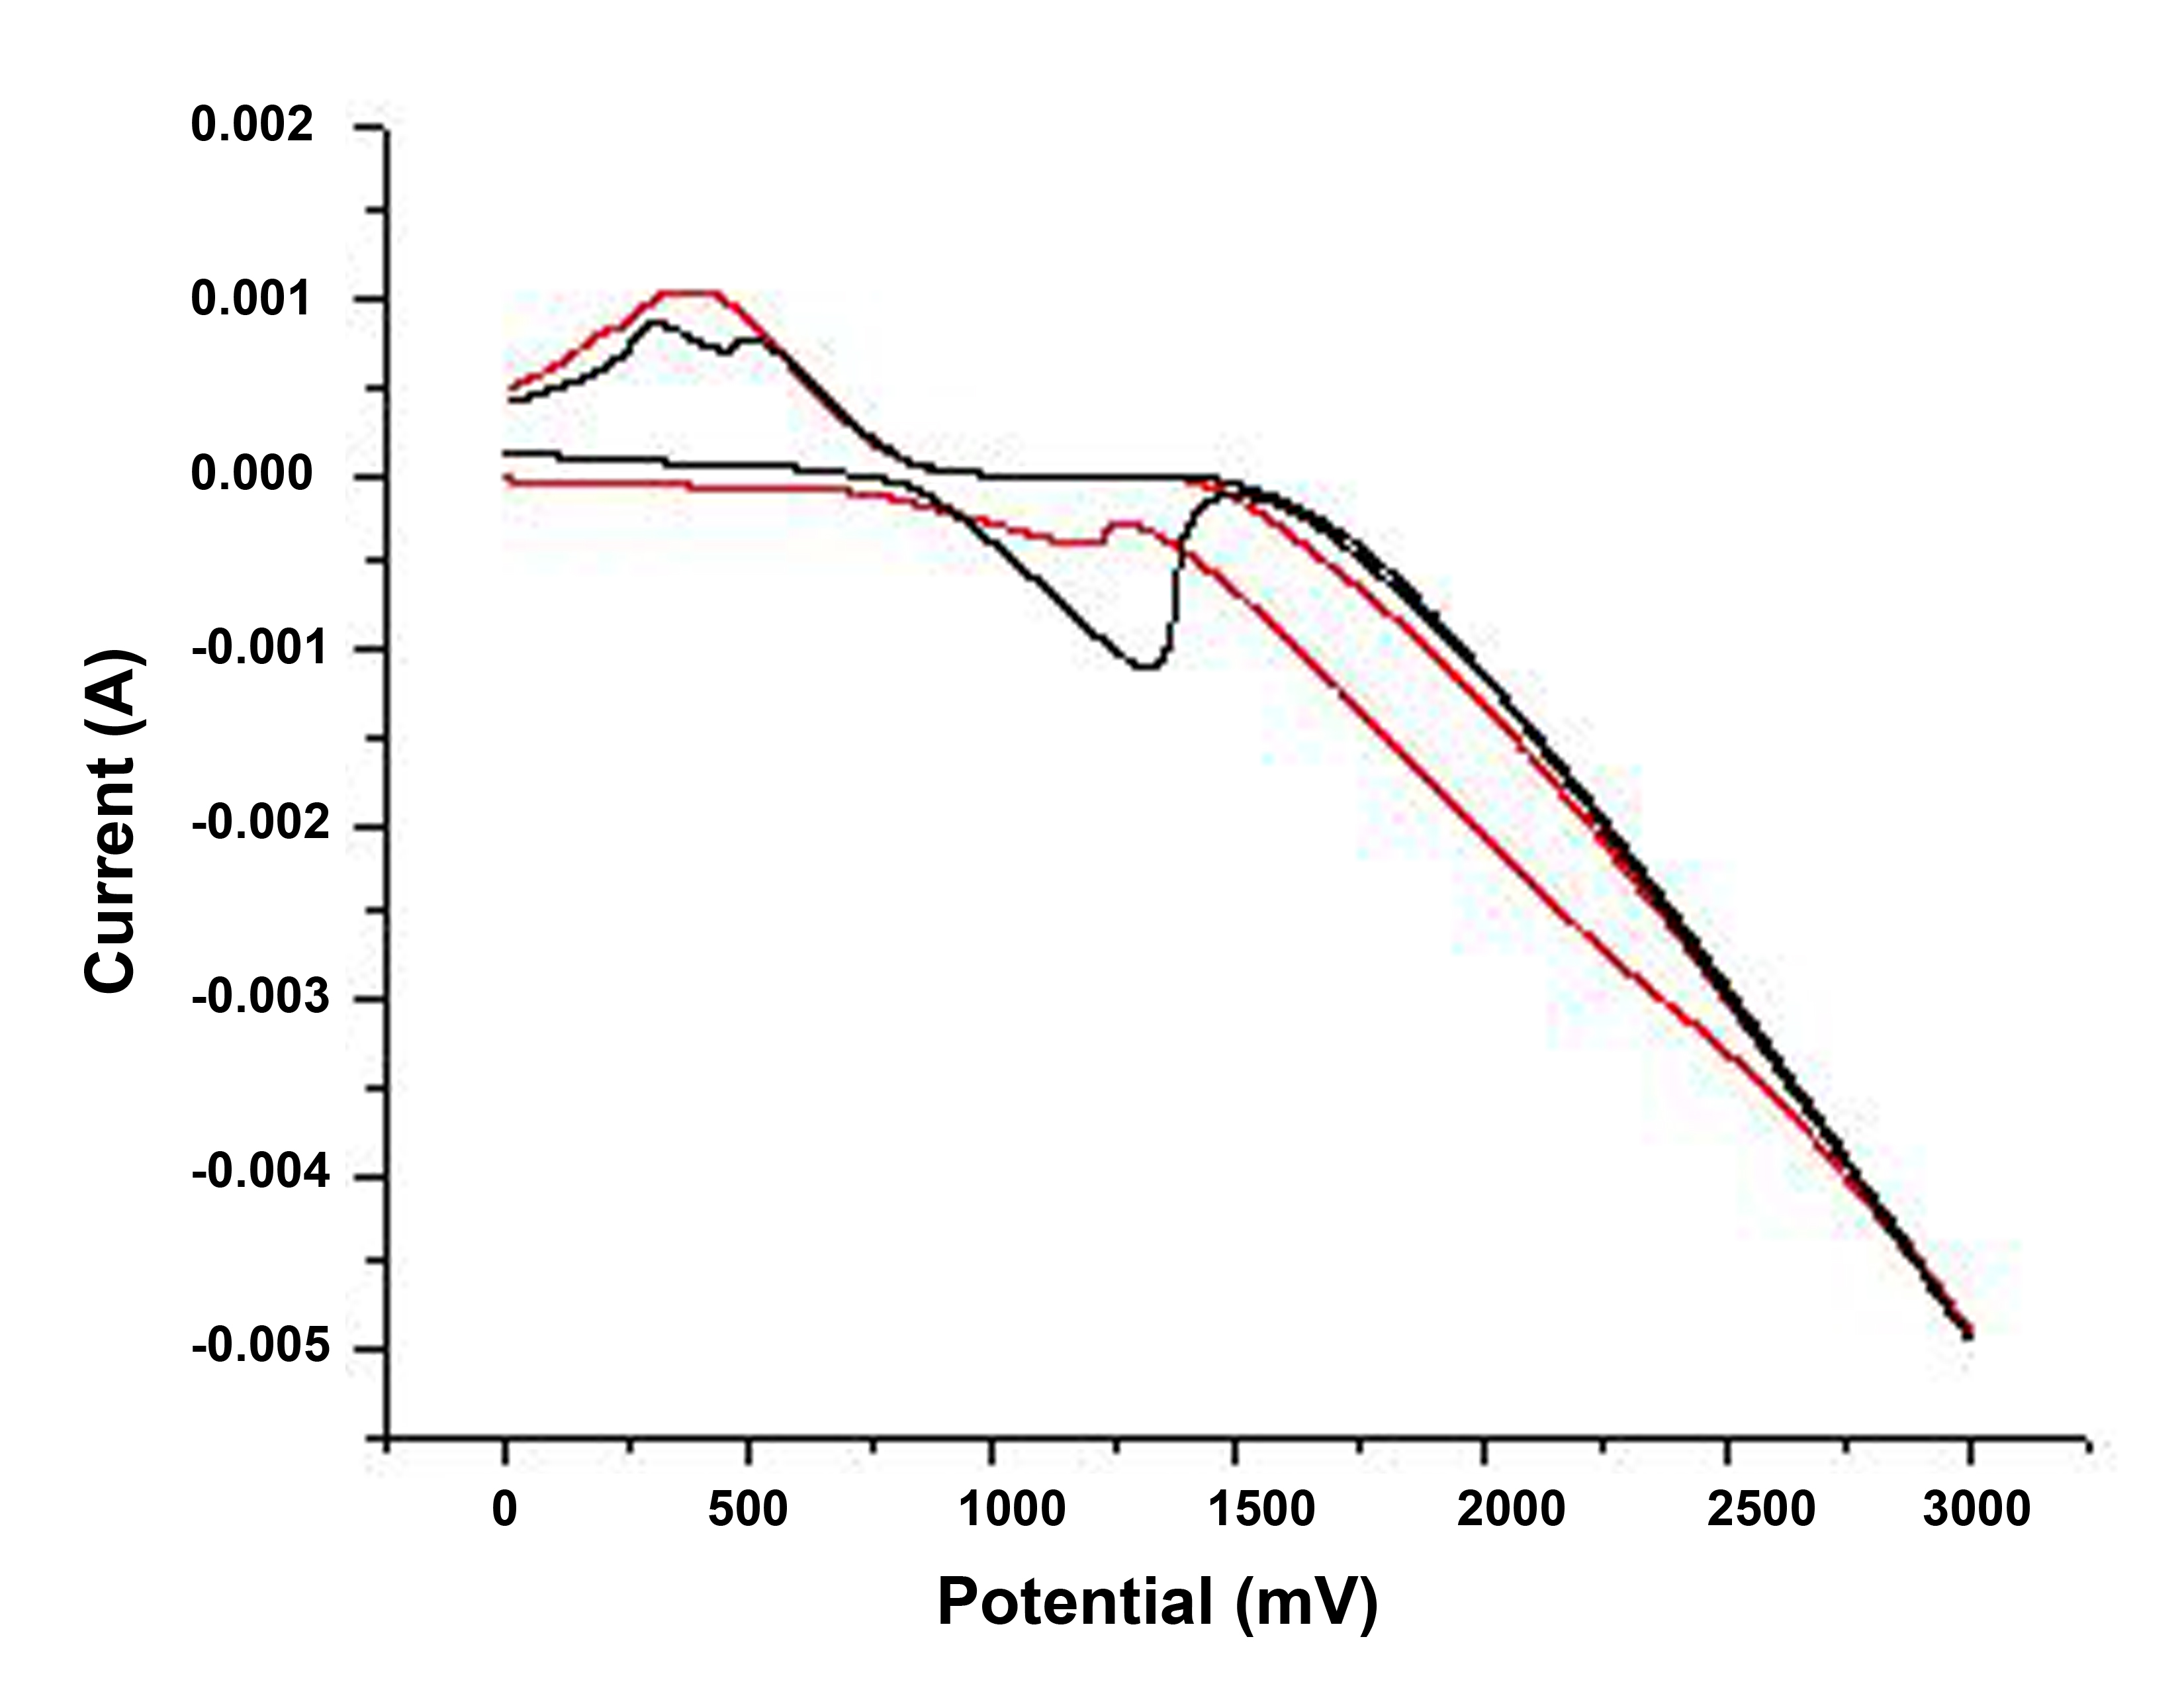 Curvas de oxidación de dos muestras de XGNR preparadas en condiciones similares. La muestra con menor concentración se muestra por la curva roja, mientras que la muestra con mayor concentración se muestra como una curva negra.